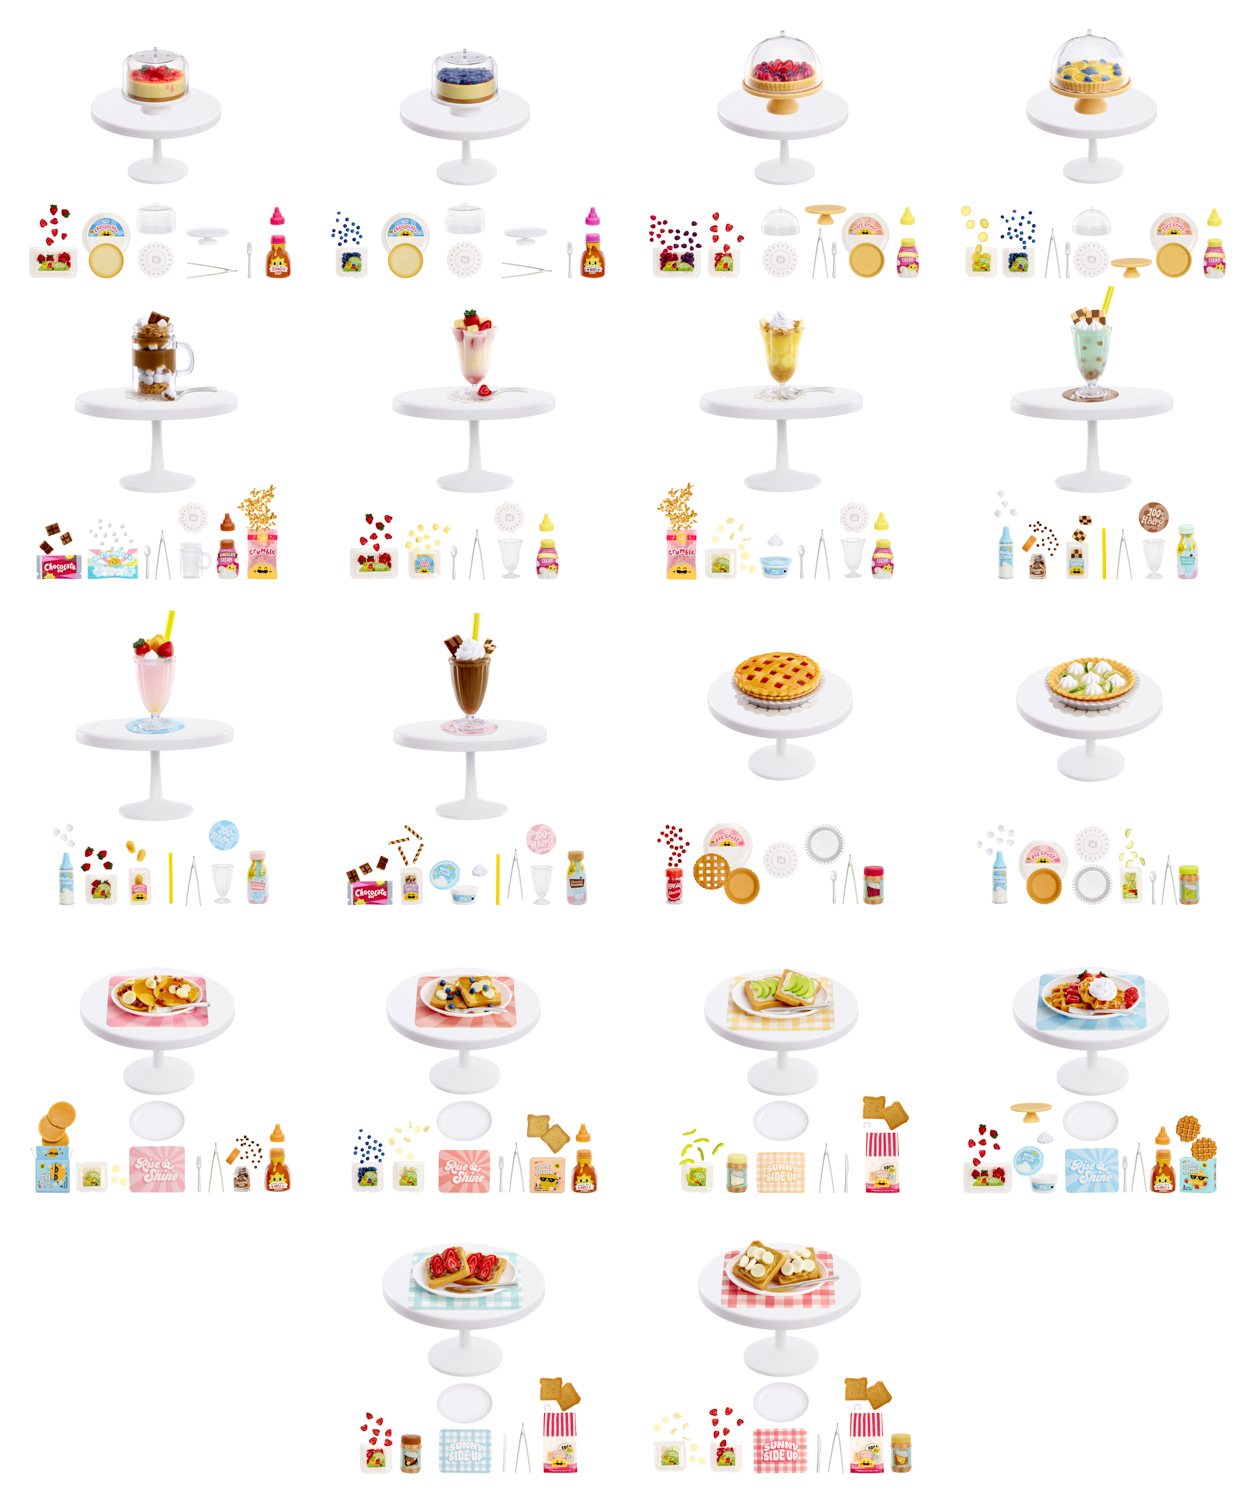 MGA's Miniverse - Make It Mini Food Cafe Minis – L.O.L. Surprise